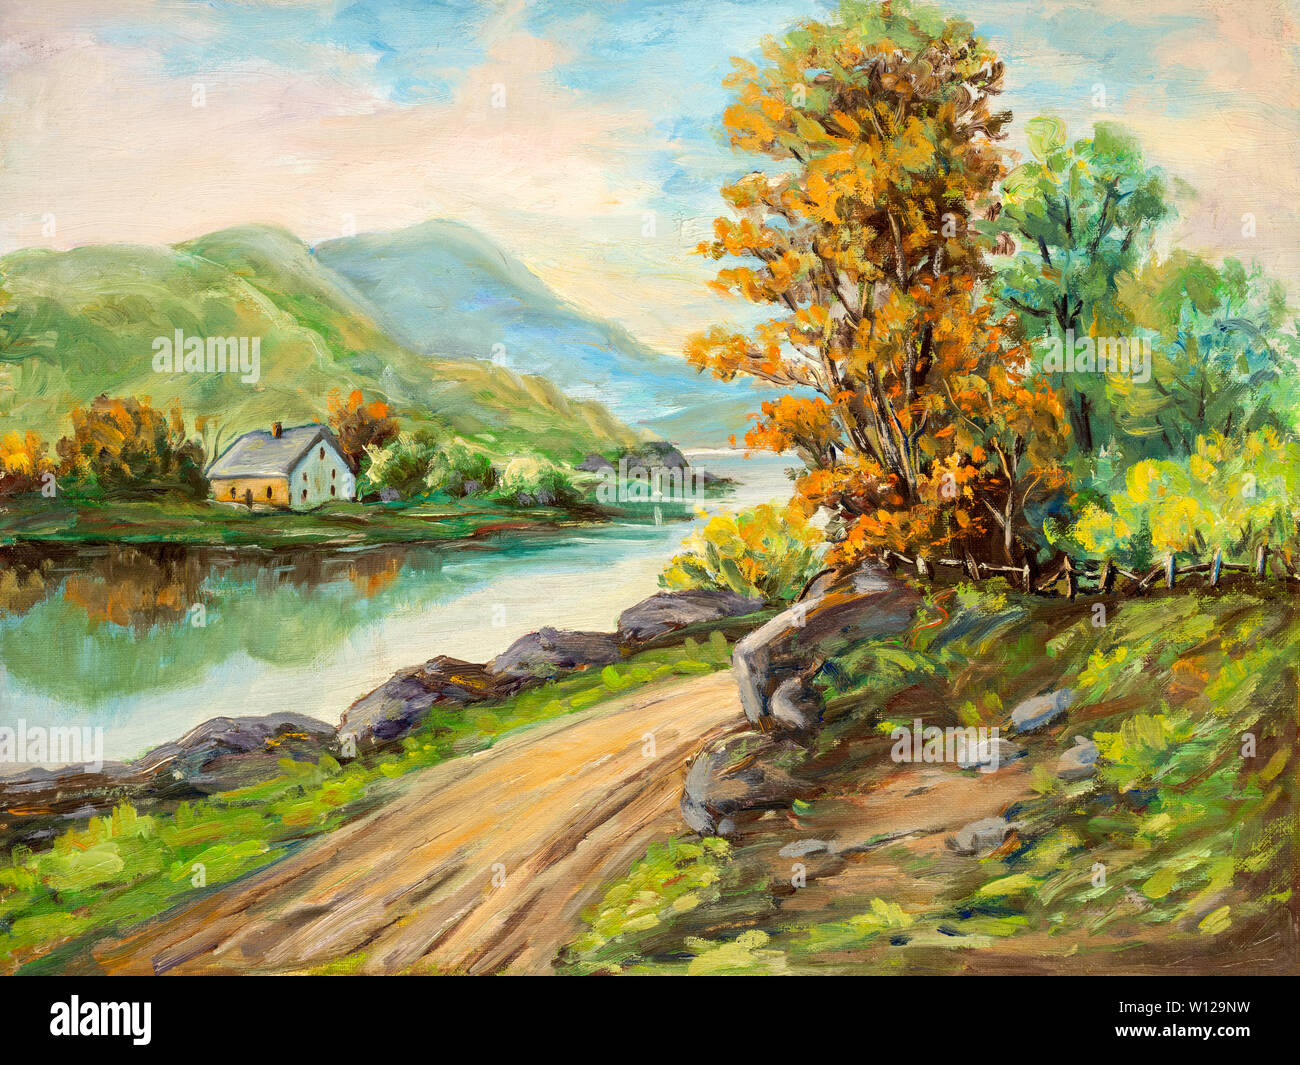 Stile impressionista paesaggio dipinto ad olio raffigurante una scena rurale. Foto Stock